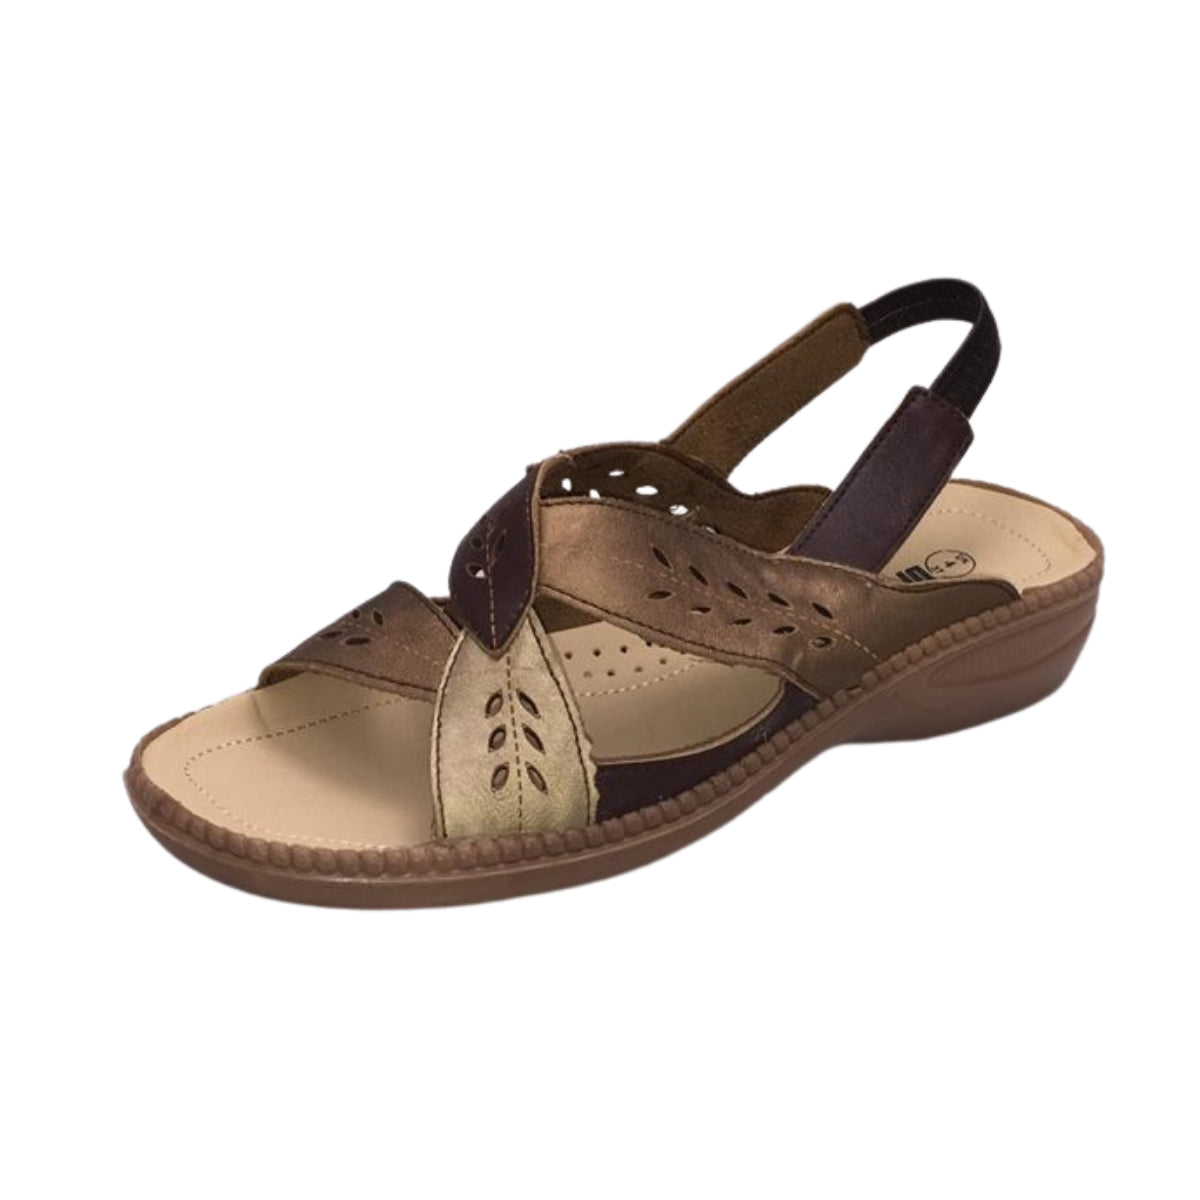 Brown / bronze low wedge open toe comfort sandals